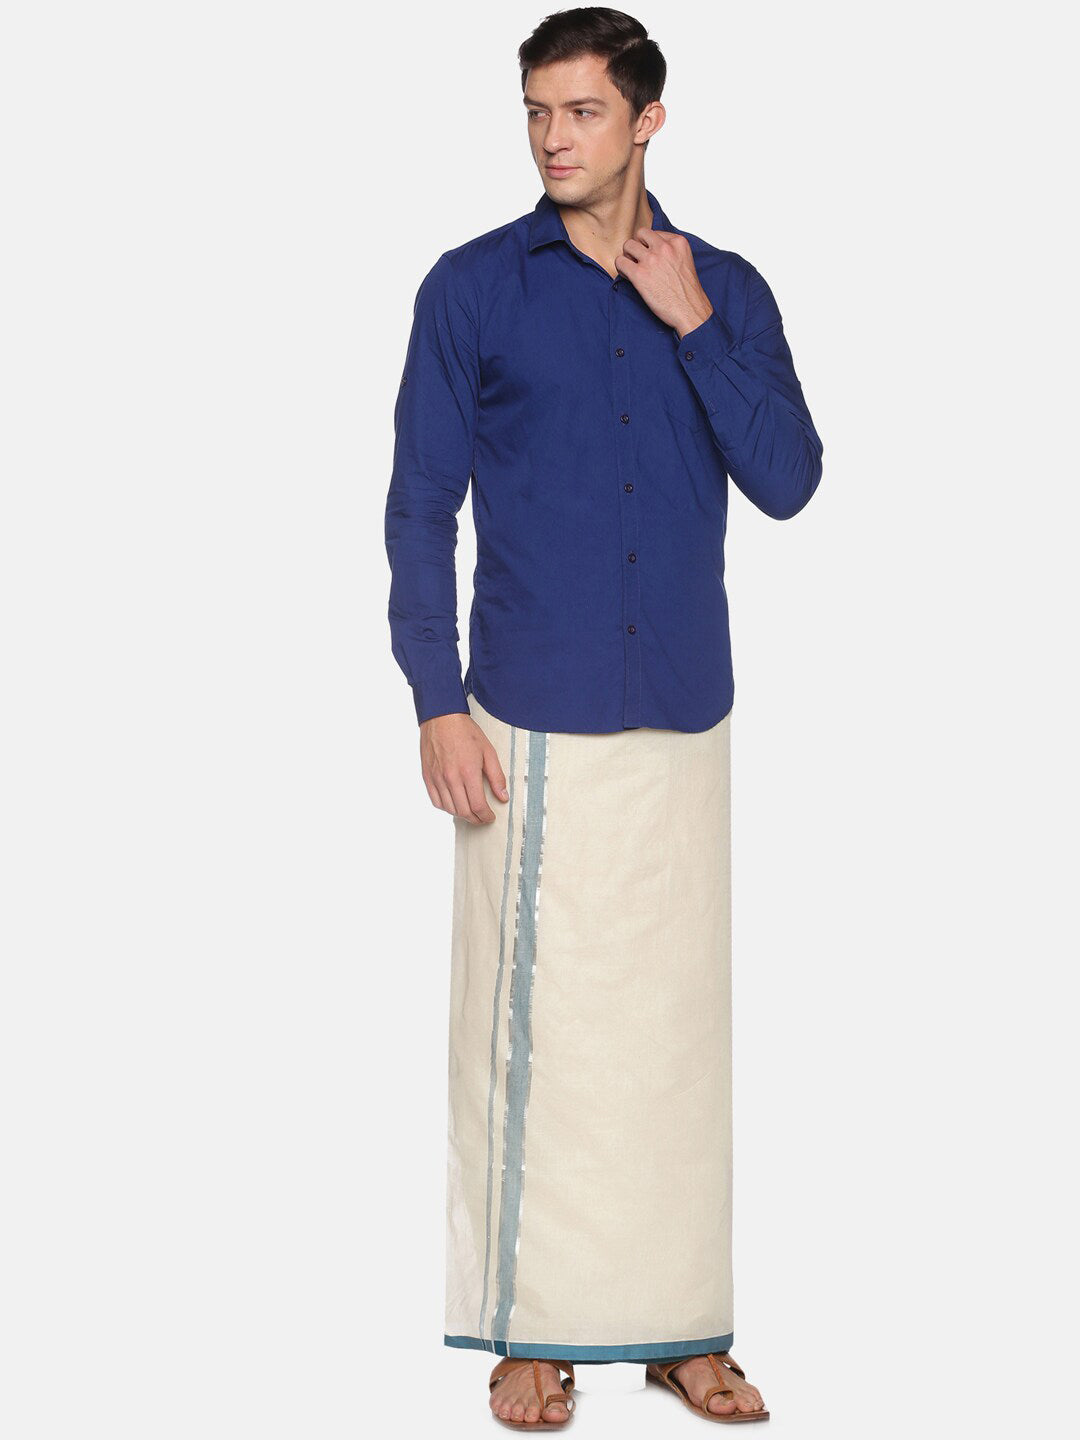 Men's Single Kerala Lungi Dhoti/Mundu/Sarong/Dress, Thalapathi border Dhoti  | eBay